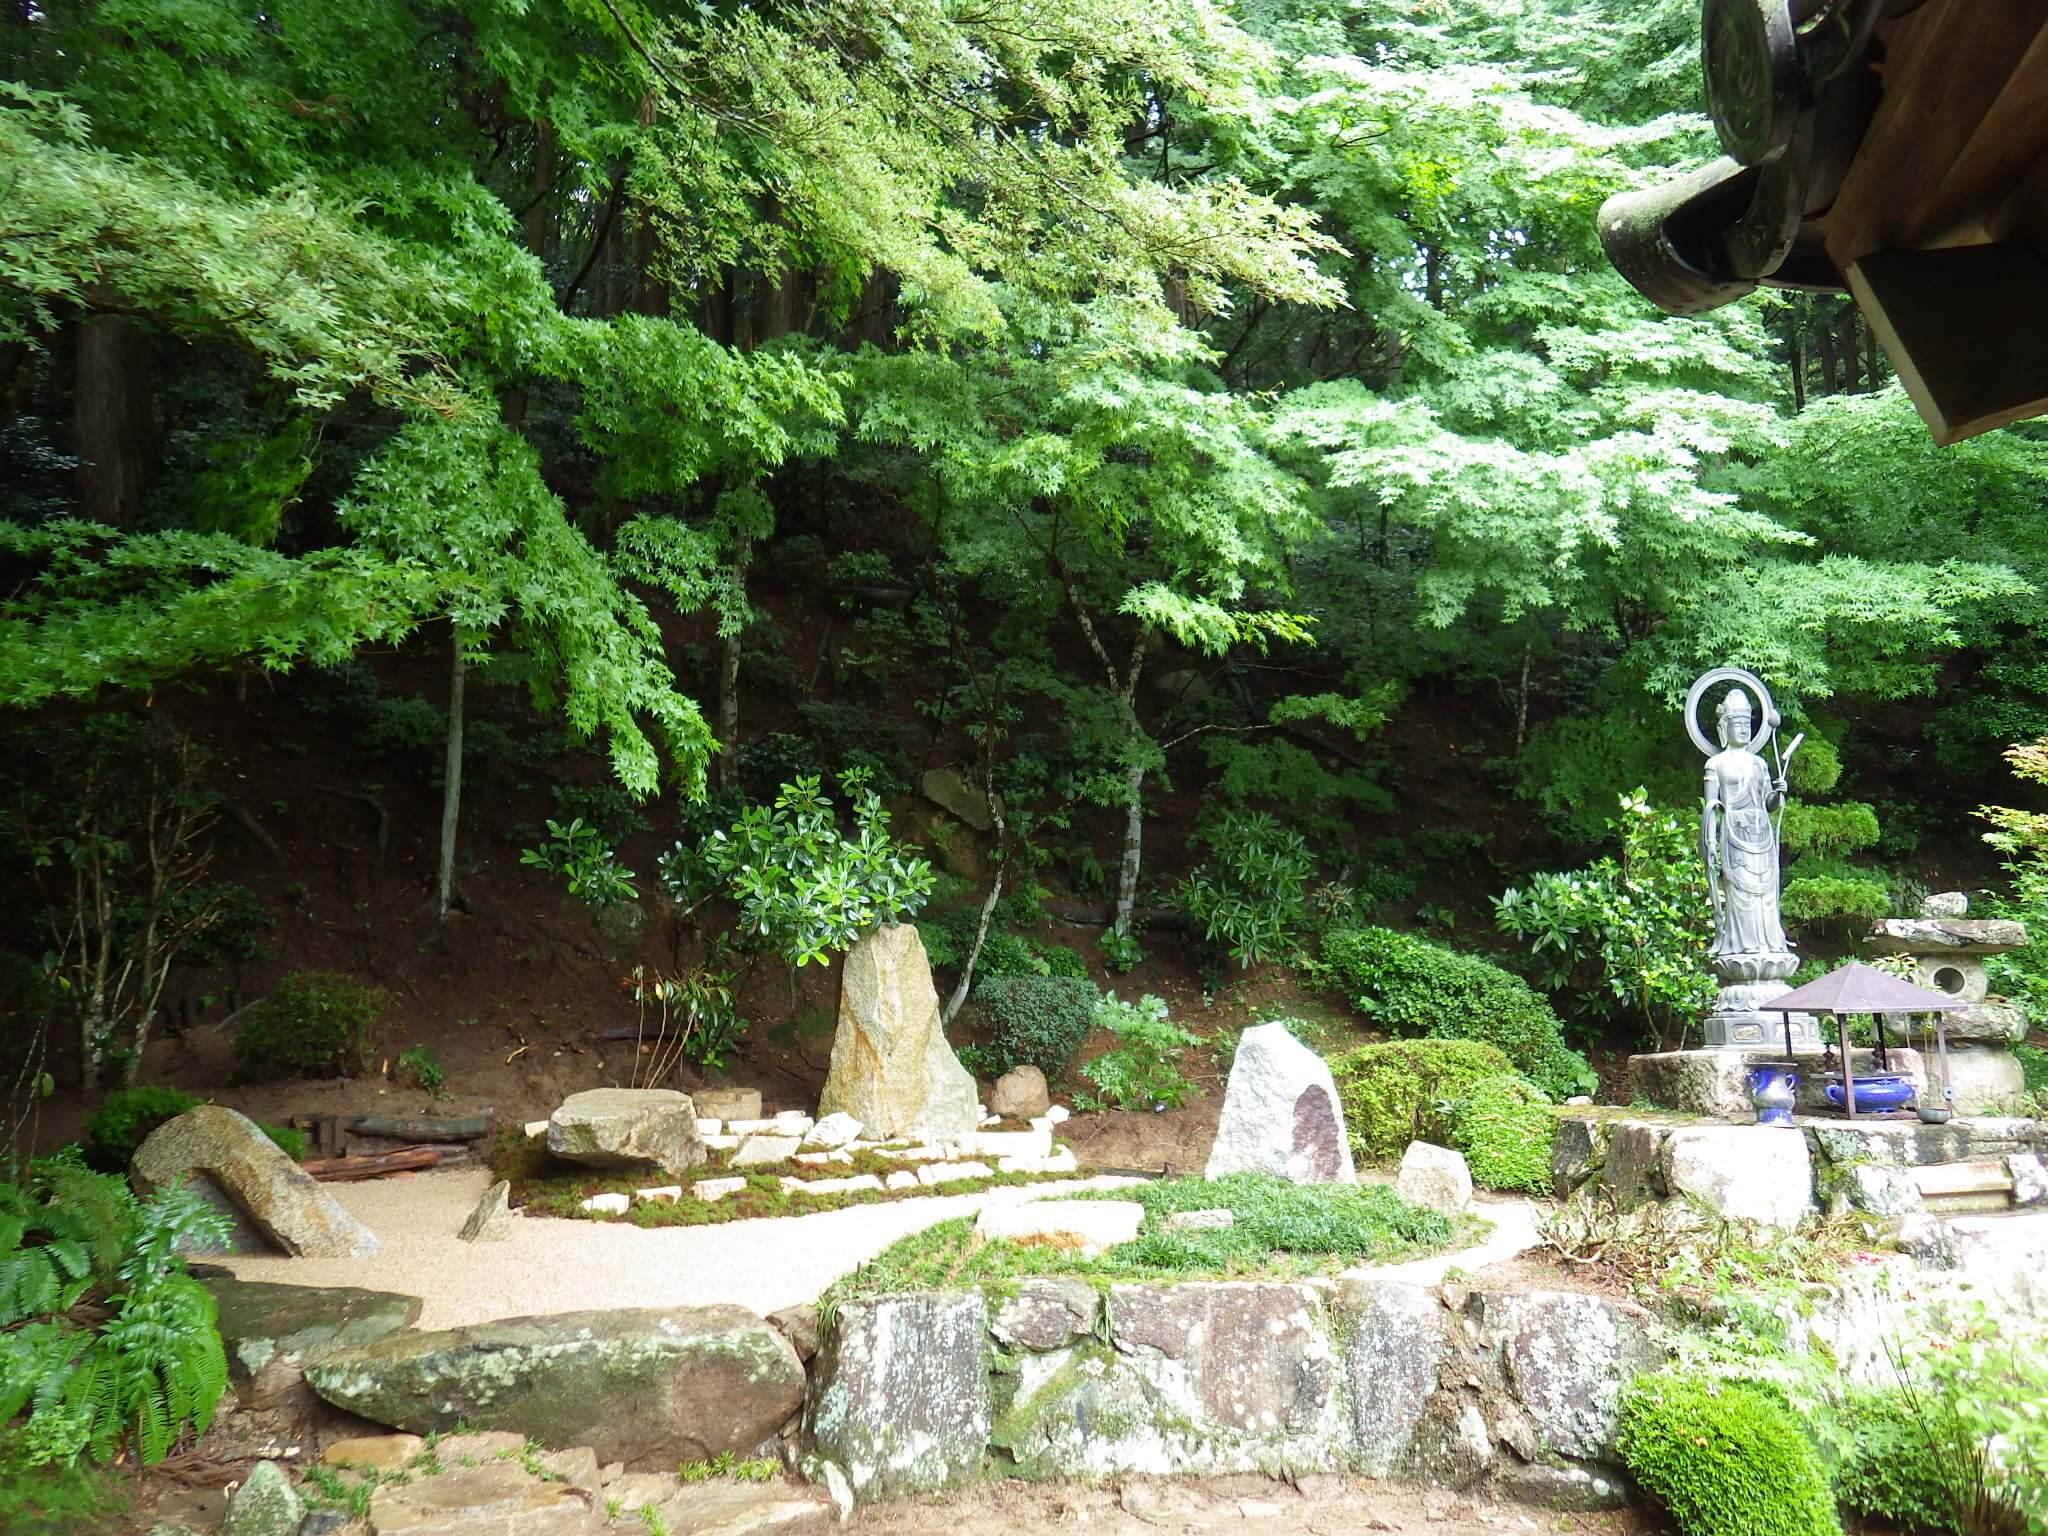 広島県 瑞田山 康徳寺から長年の雪舟庭園の奉仕や「五行石庭園」の造営に関して景観を一新したと評価されました